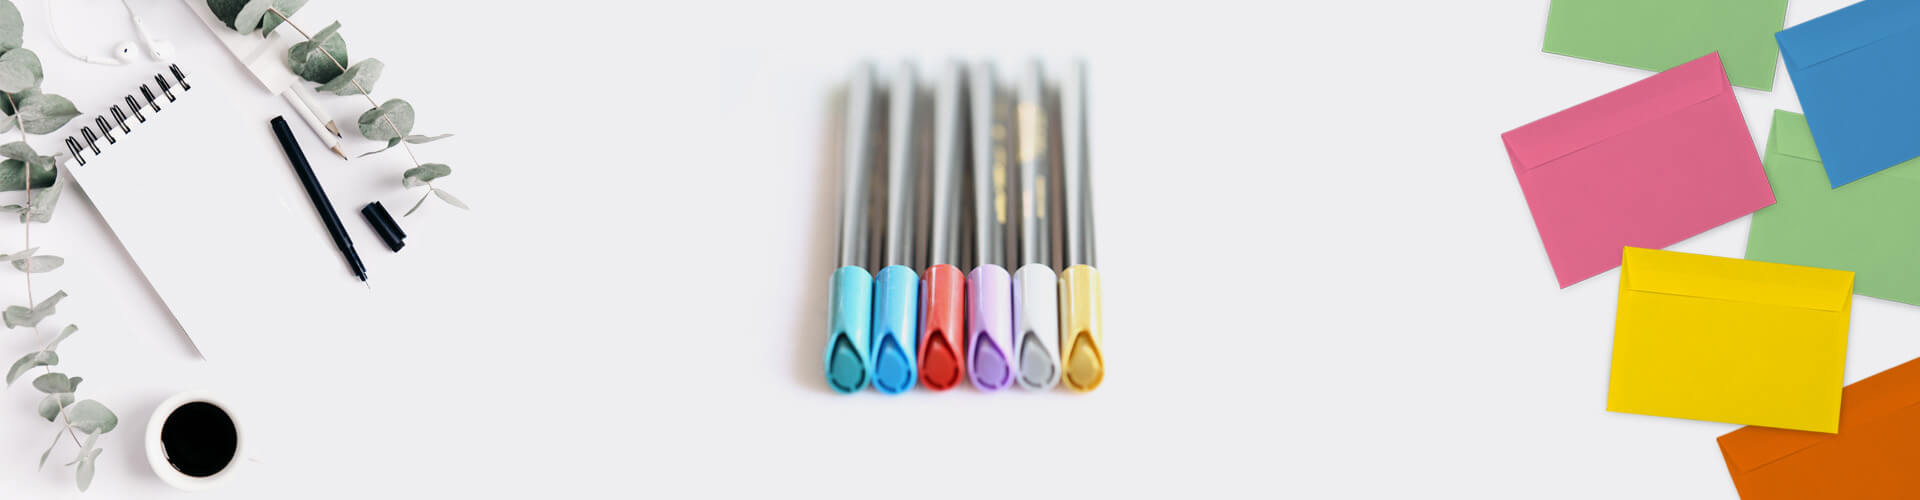 Bild mit verschieden farbigen Briefumschlägen Edding-Metallic-Stiften auf enem Schreibtisch